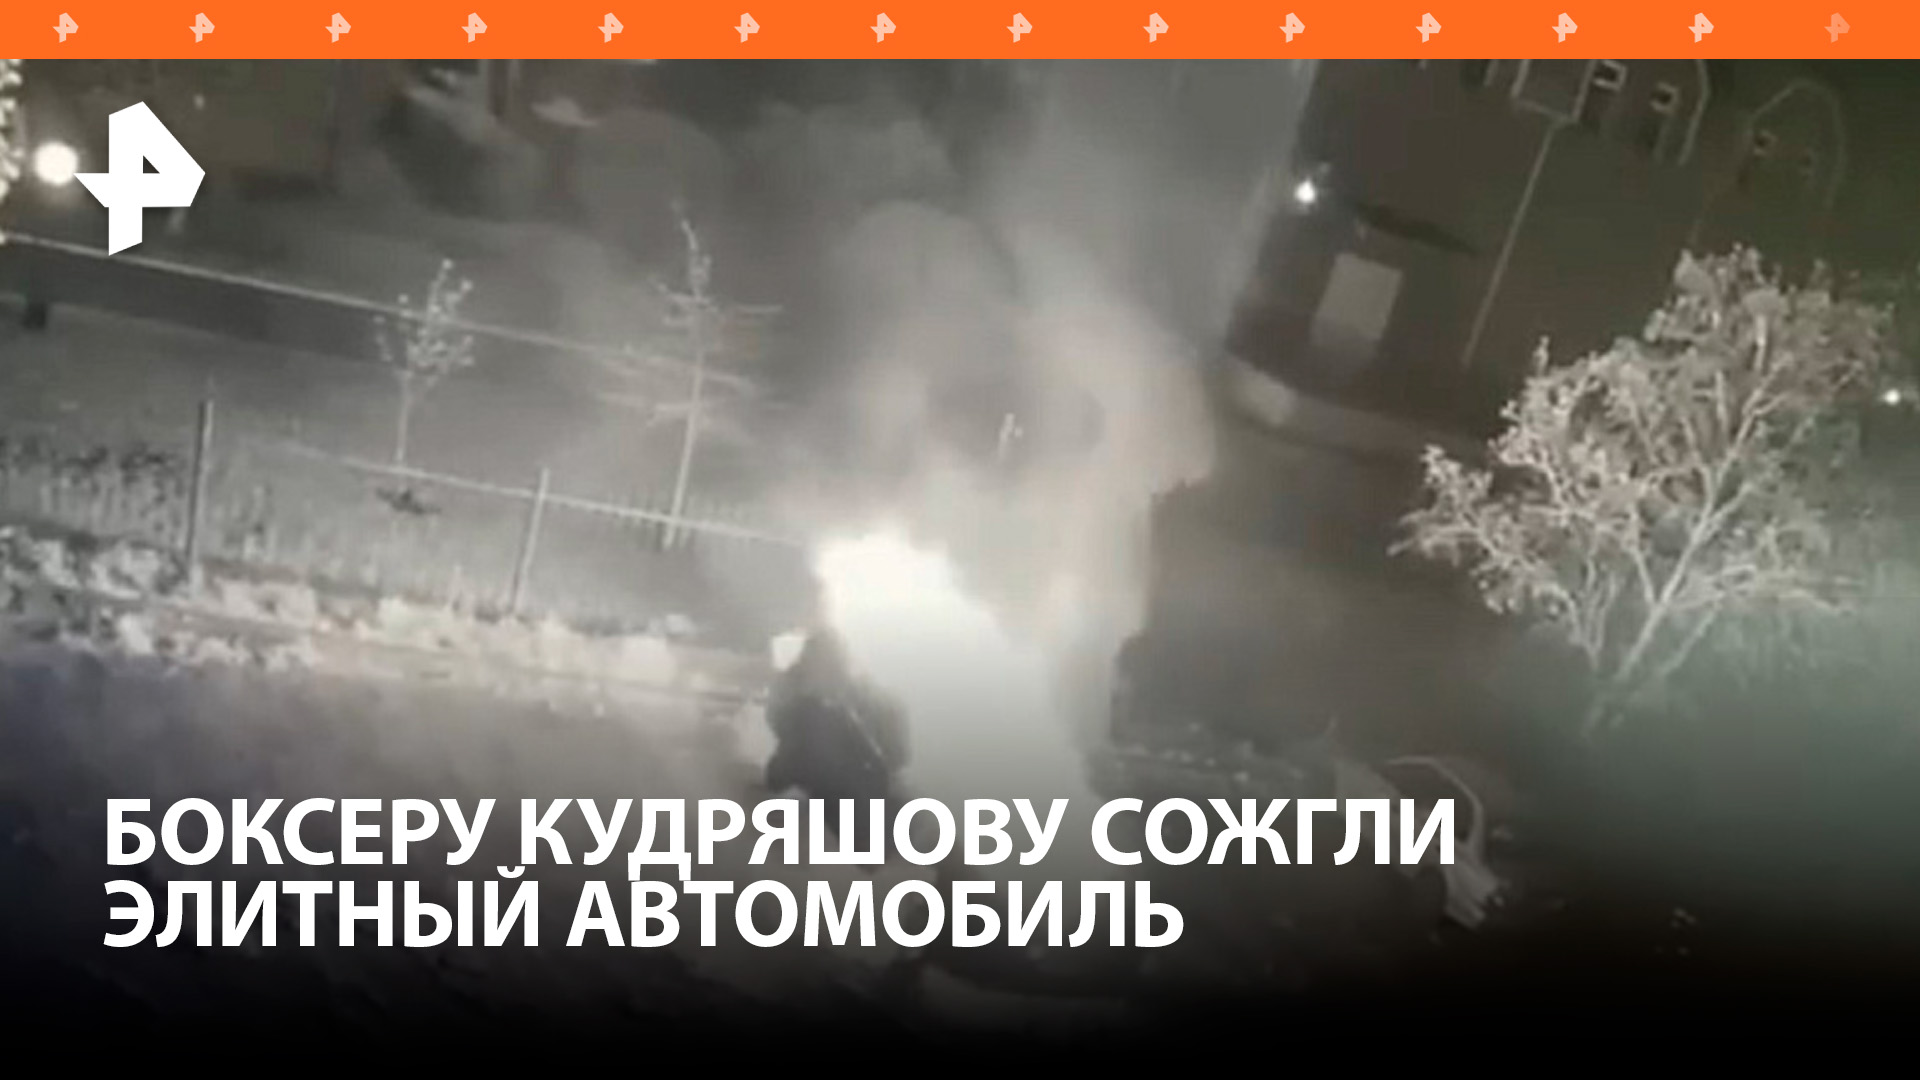 Спортсмен Дмитрий Кудряшов рассказал о поджоге своего автомобиля / РЕН Новости